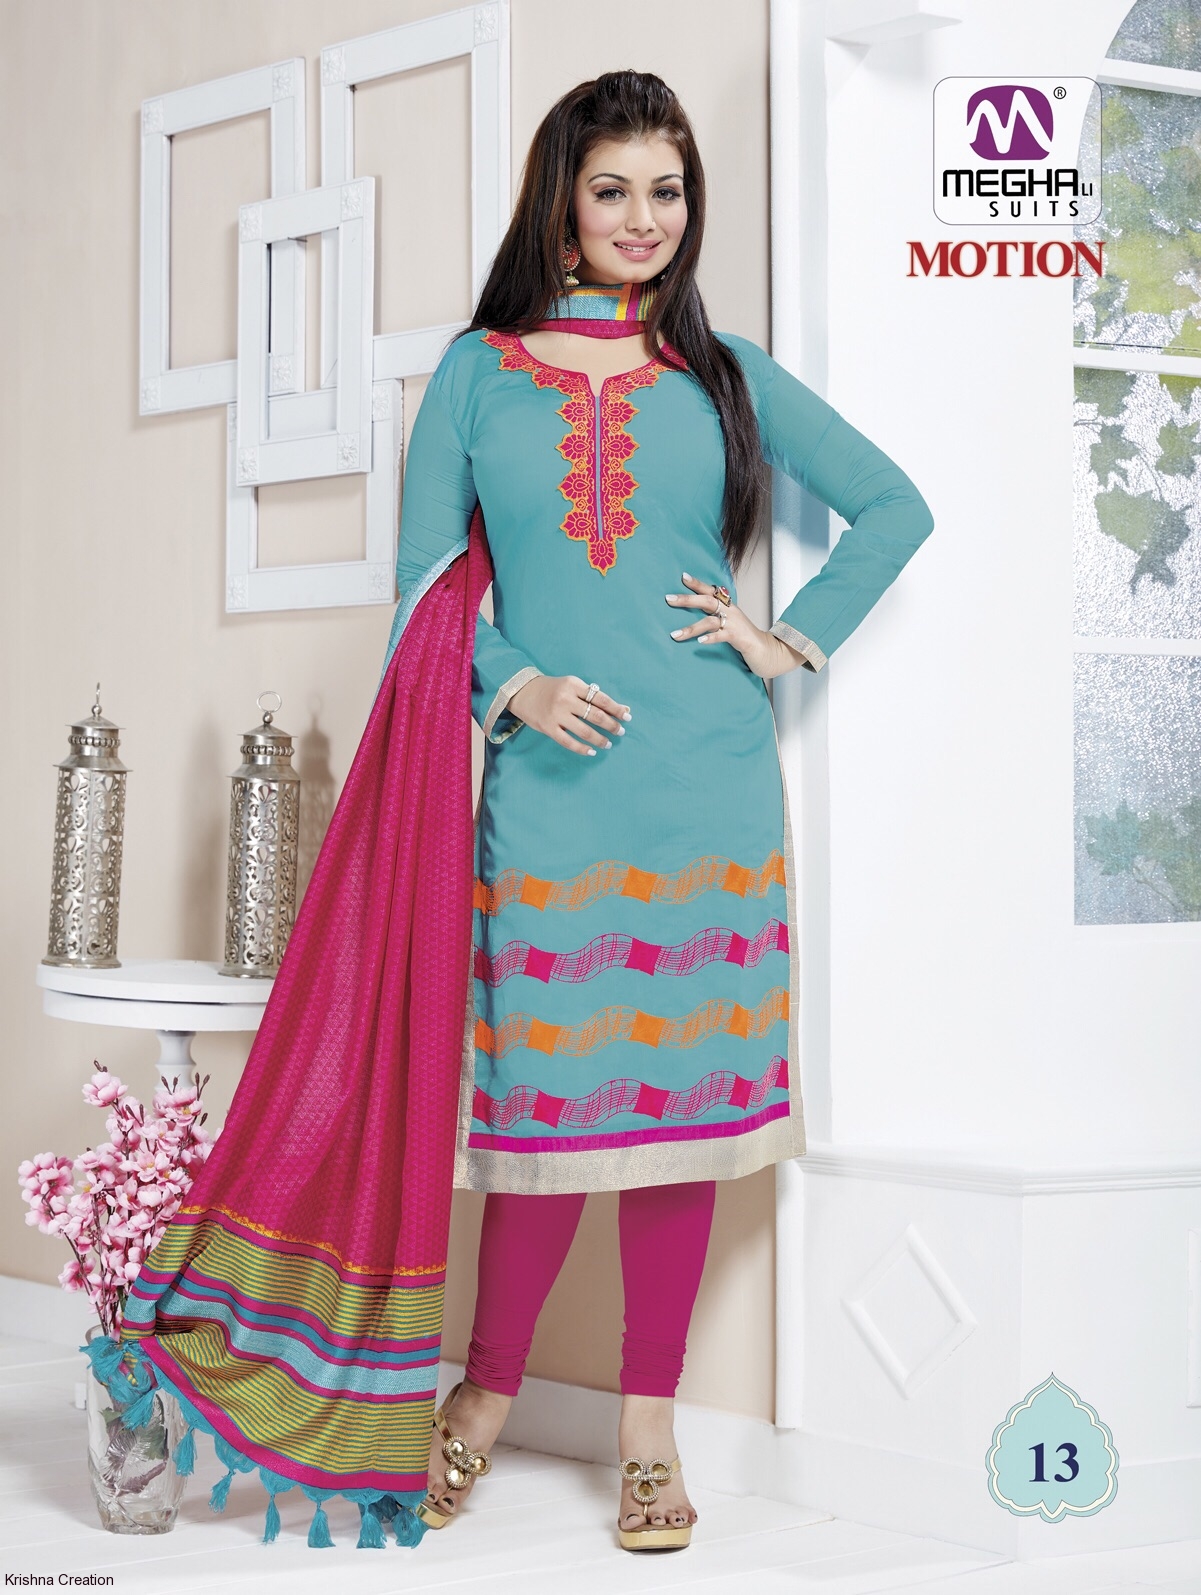 Meghali suit motion exclusive cotton dress material catalogs wholesale dealer